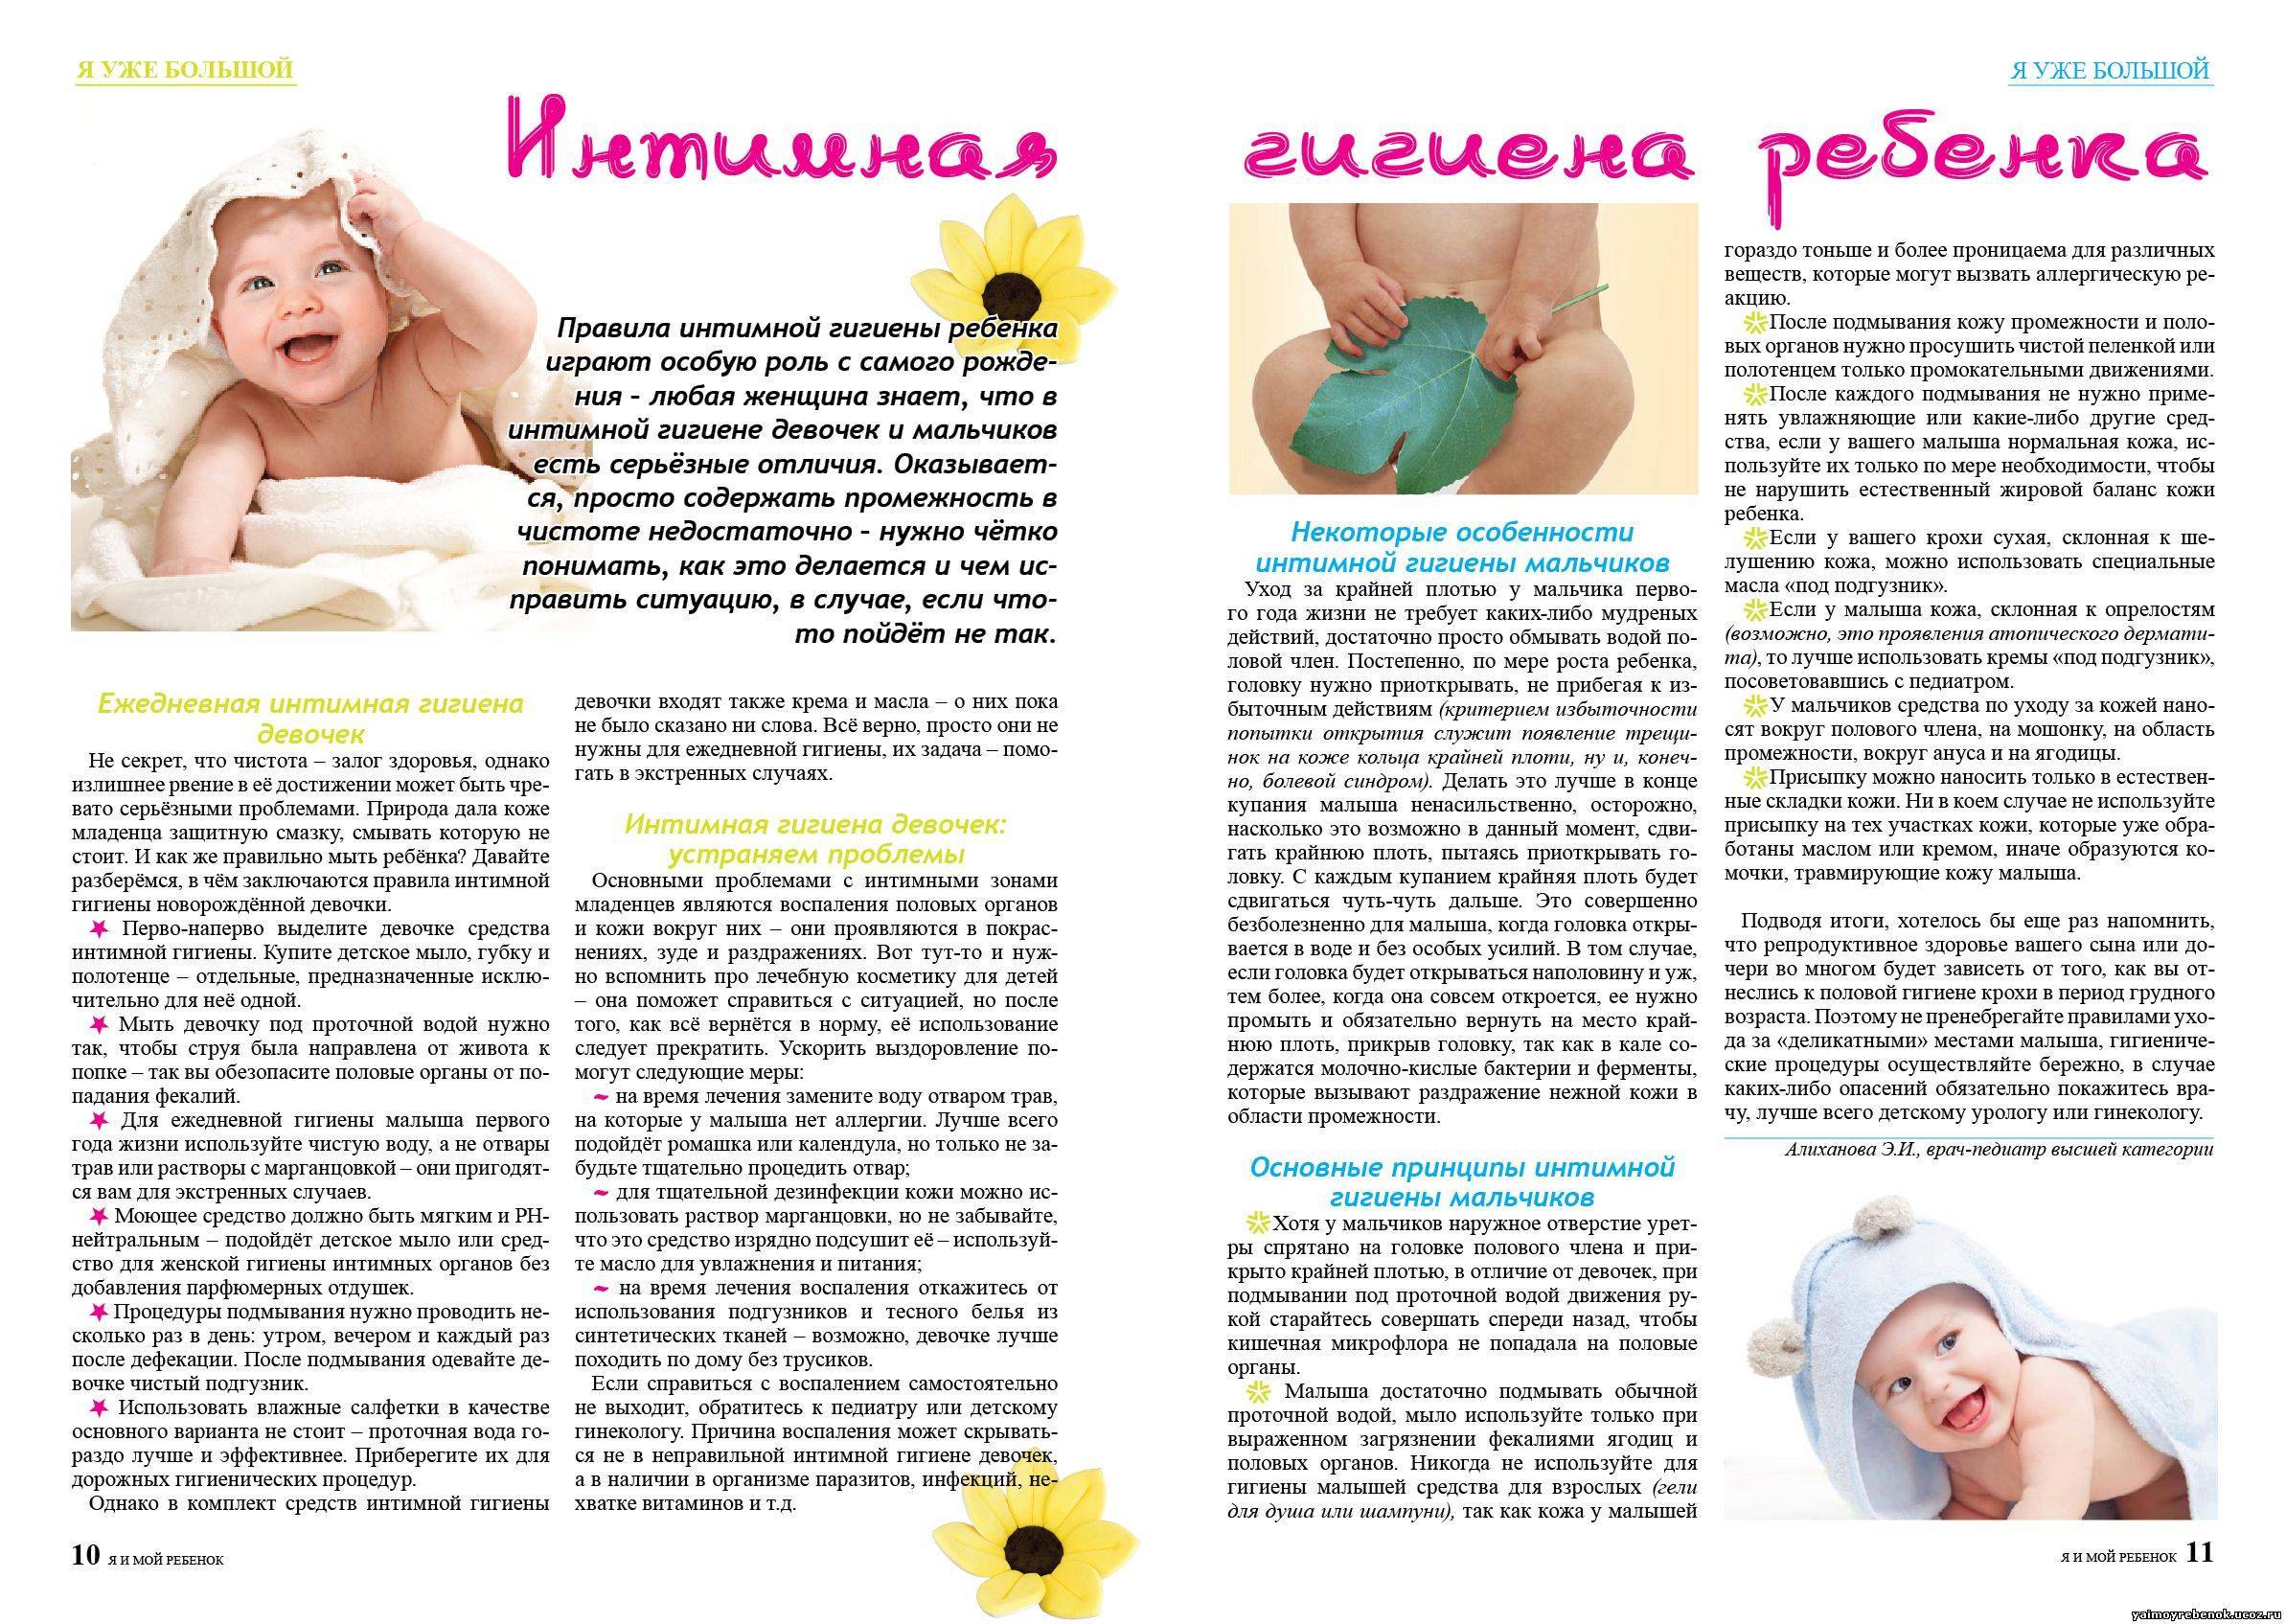 Здоровье новорожденного: что должно насторожить в первые дни